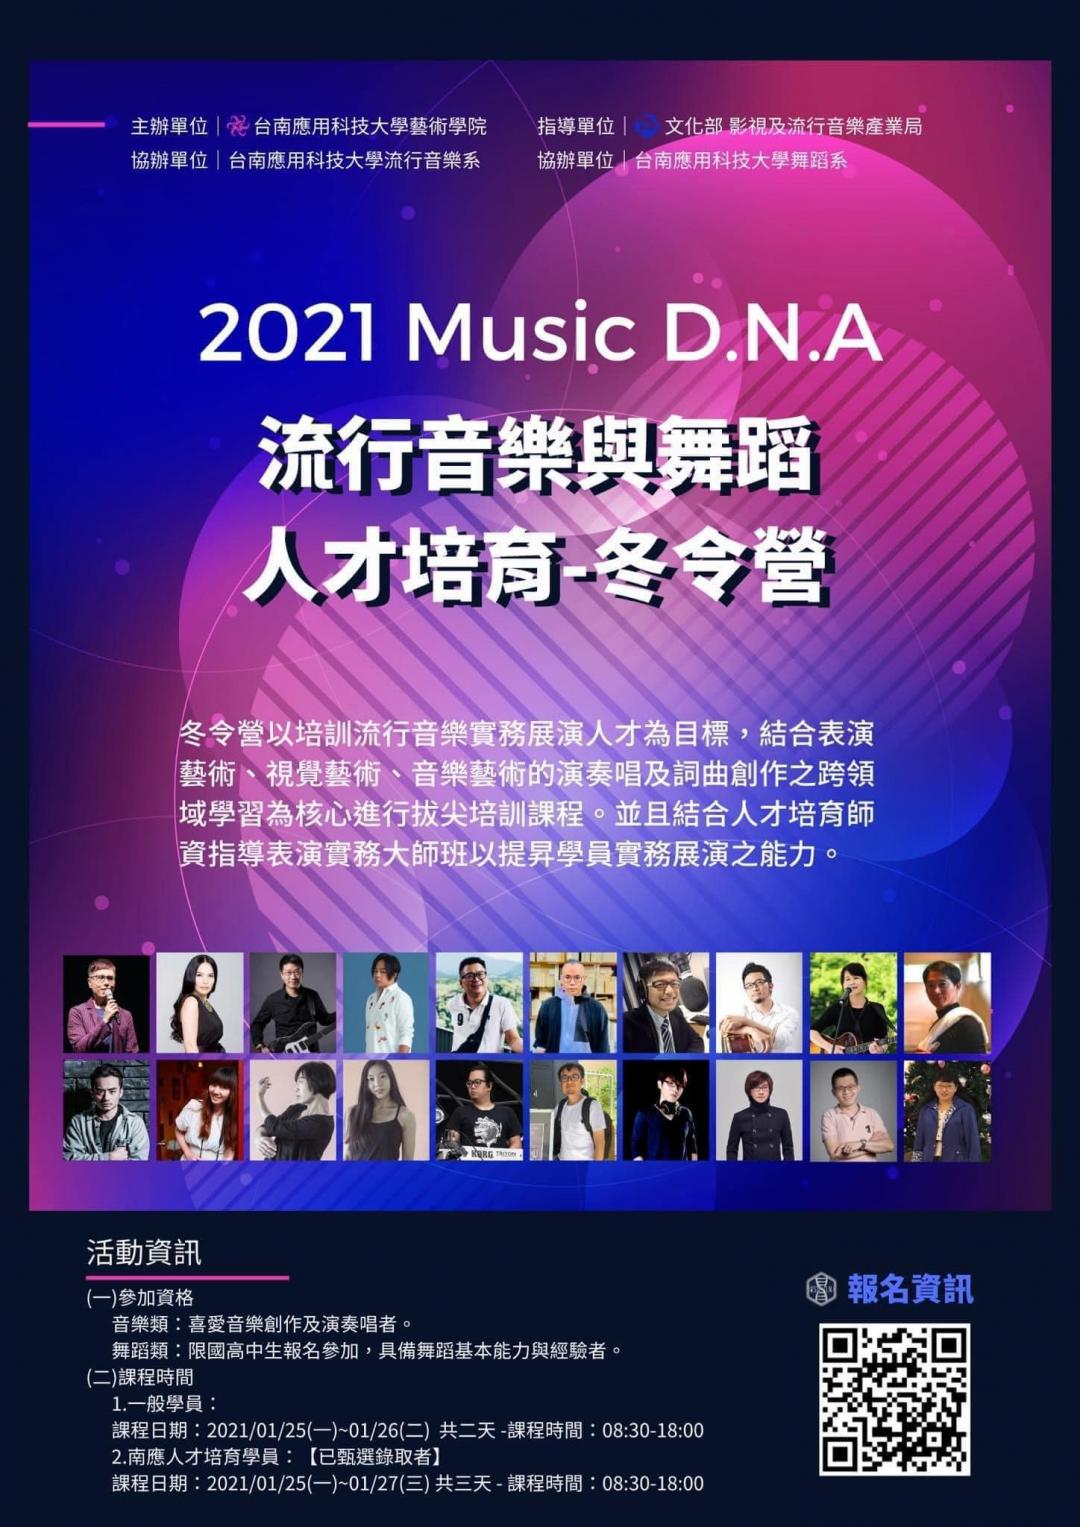 2021南風流行音樂祭-躍樂解說圖片2；來源：台南應用科技大學